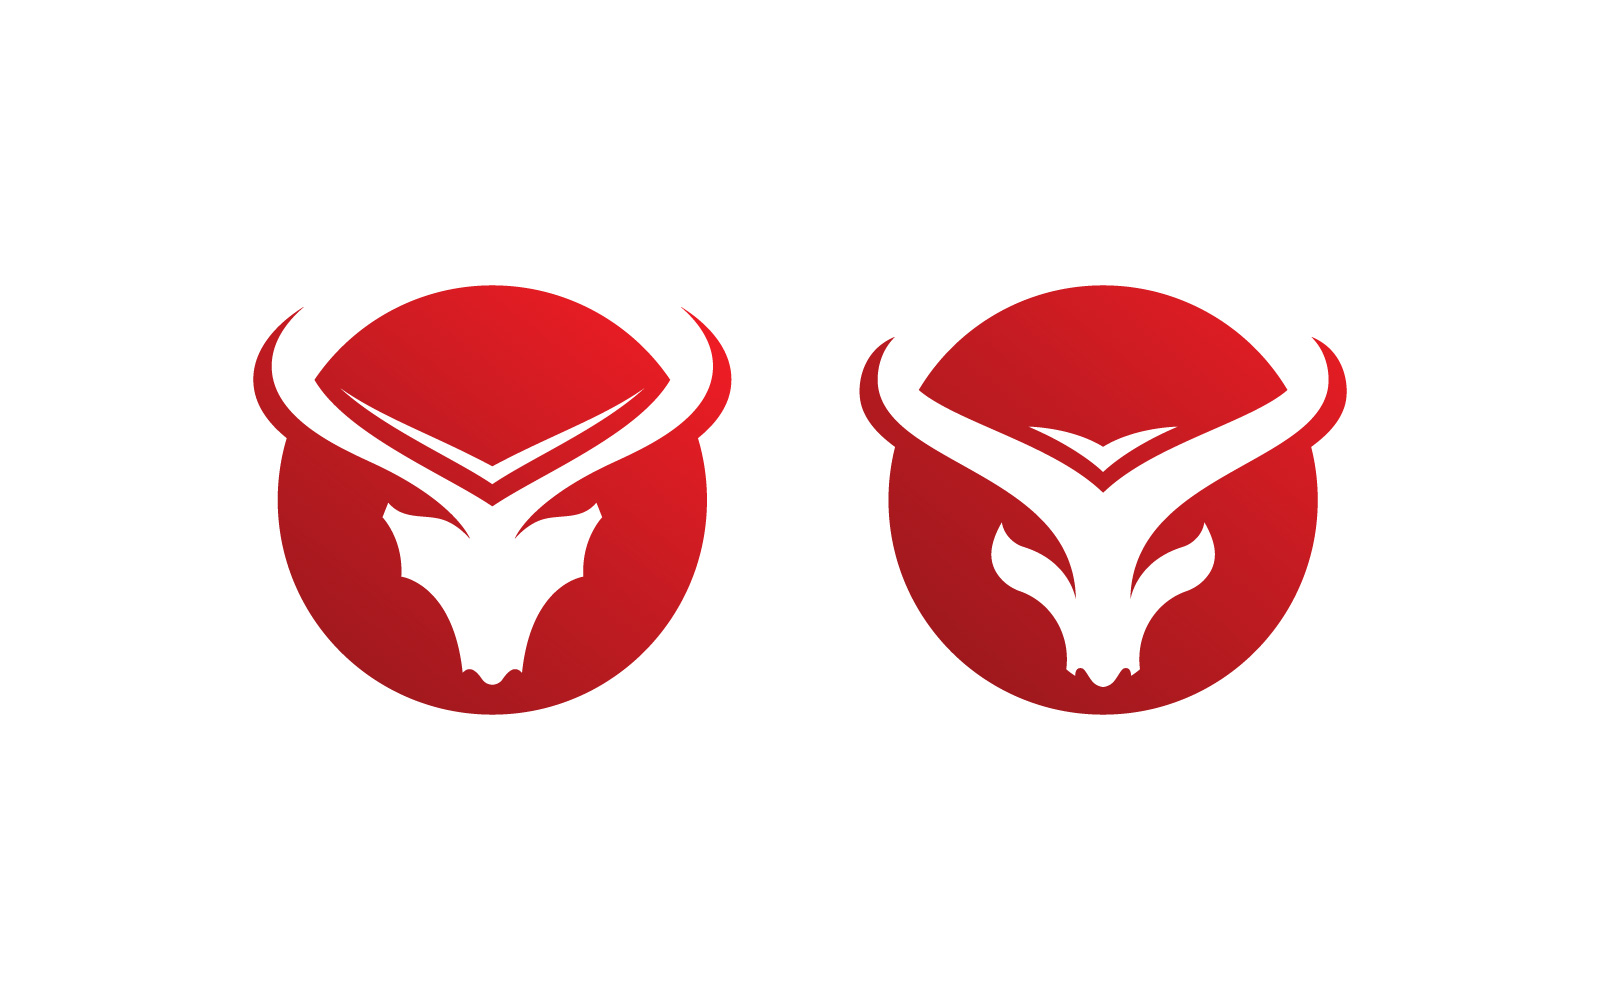 Bull horn logo symbols vector V6